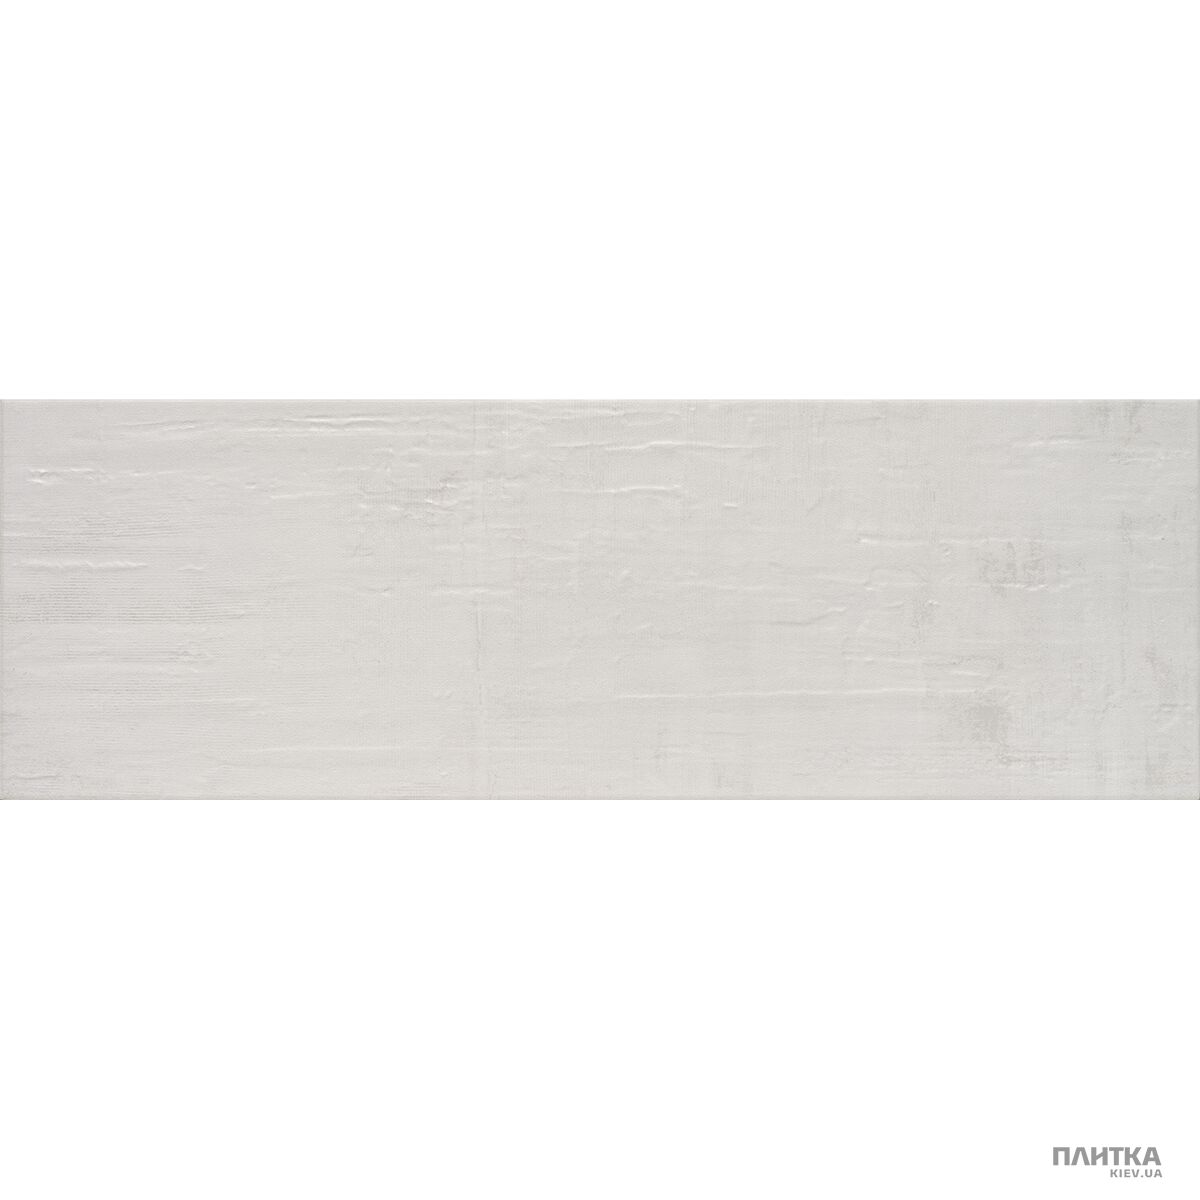 Плитка Alaplana Anduin ANDUIN BLANCO MATE білий